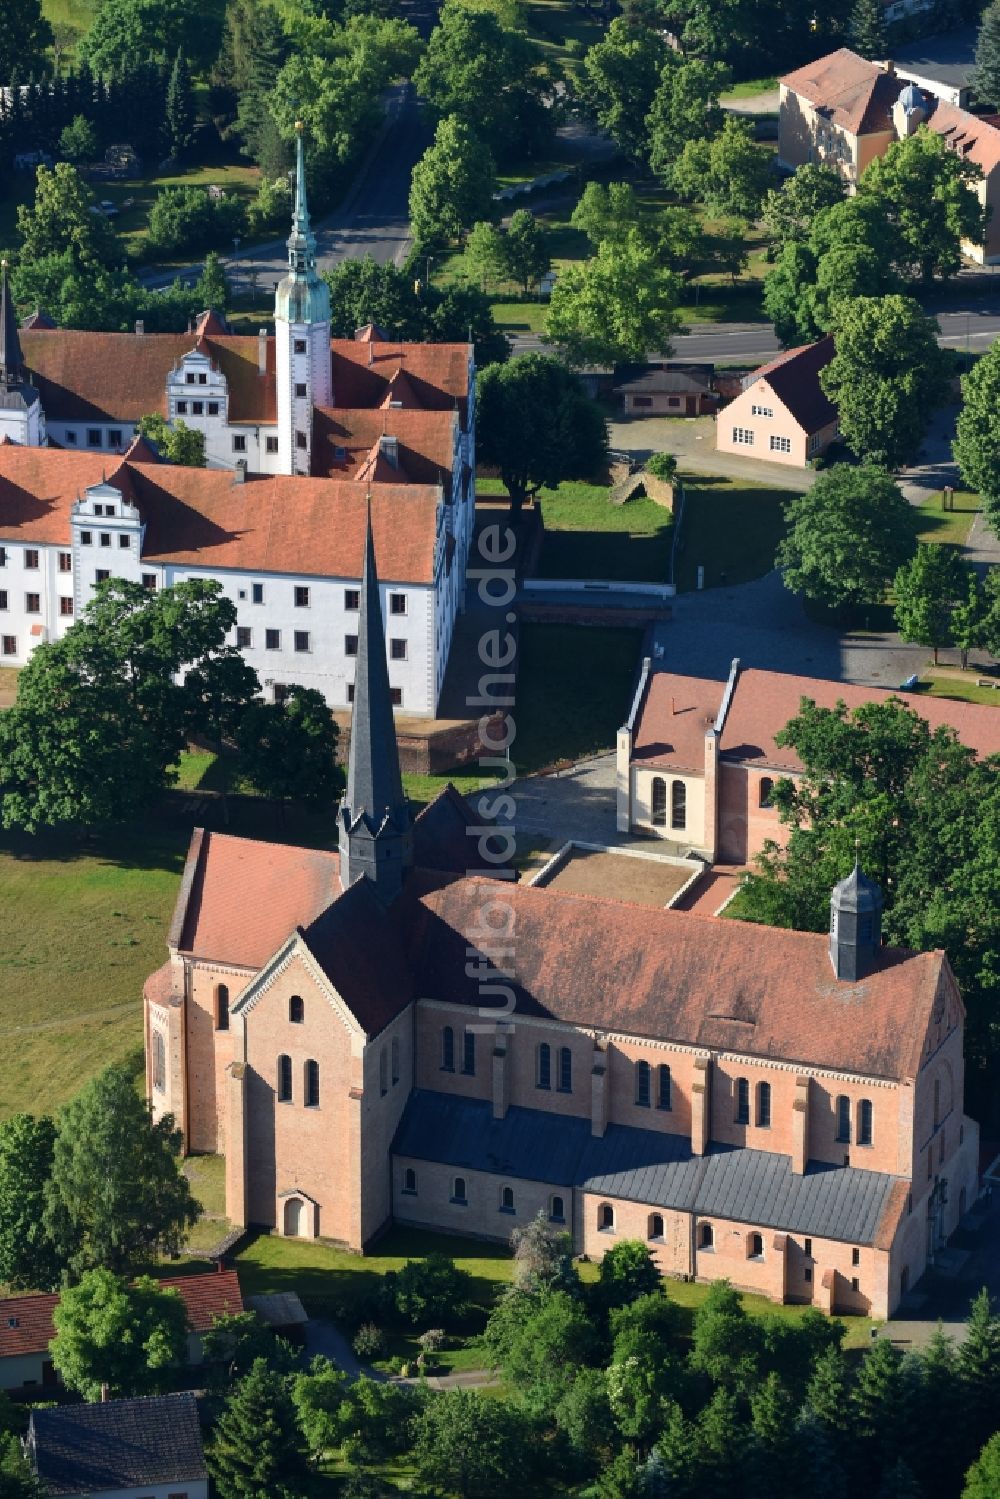 Luftbild Doberlug-Kirchhain - Burganlage des Schloss Doberlug und die Klosterkirche in Doberlug-Kirchhain im Bundesland Brandenburg, Deutschland